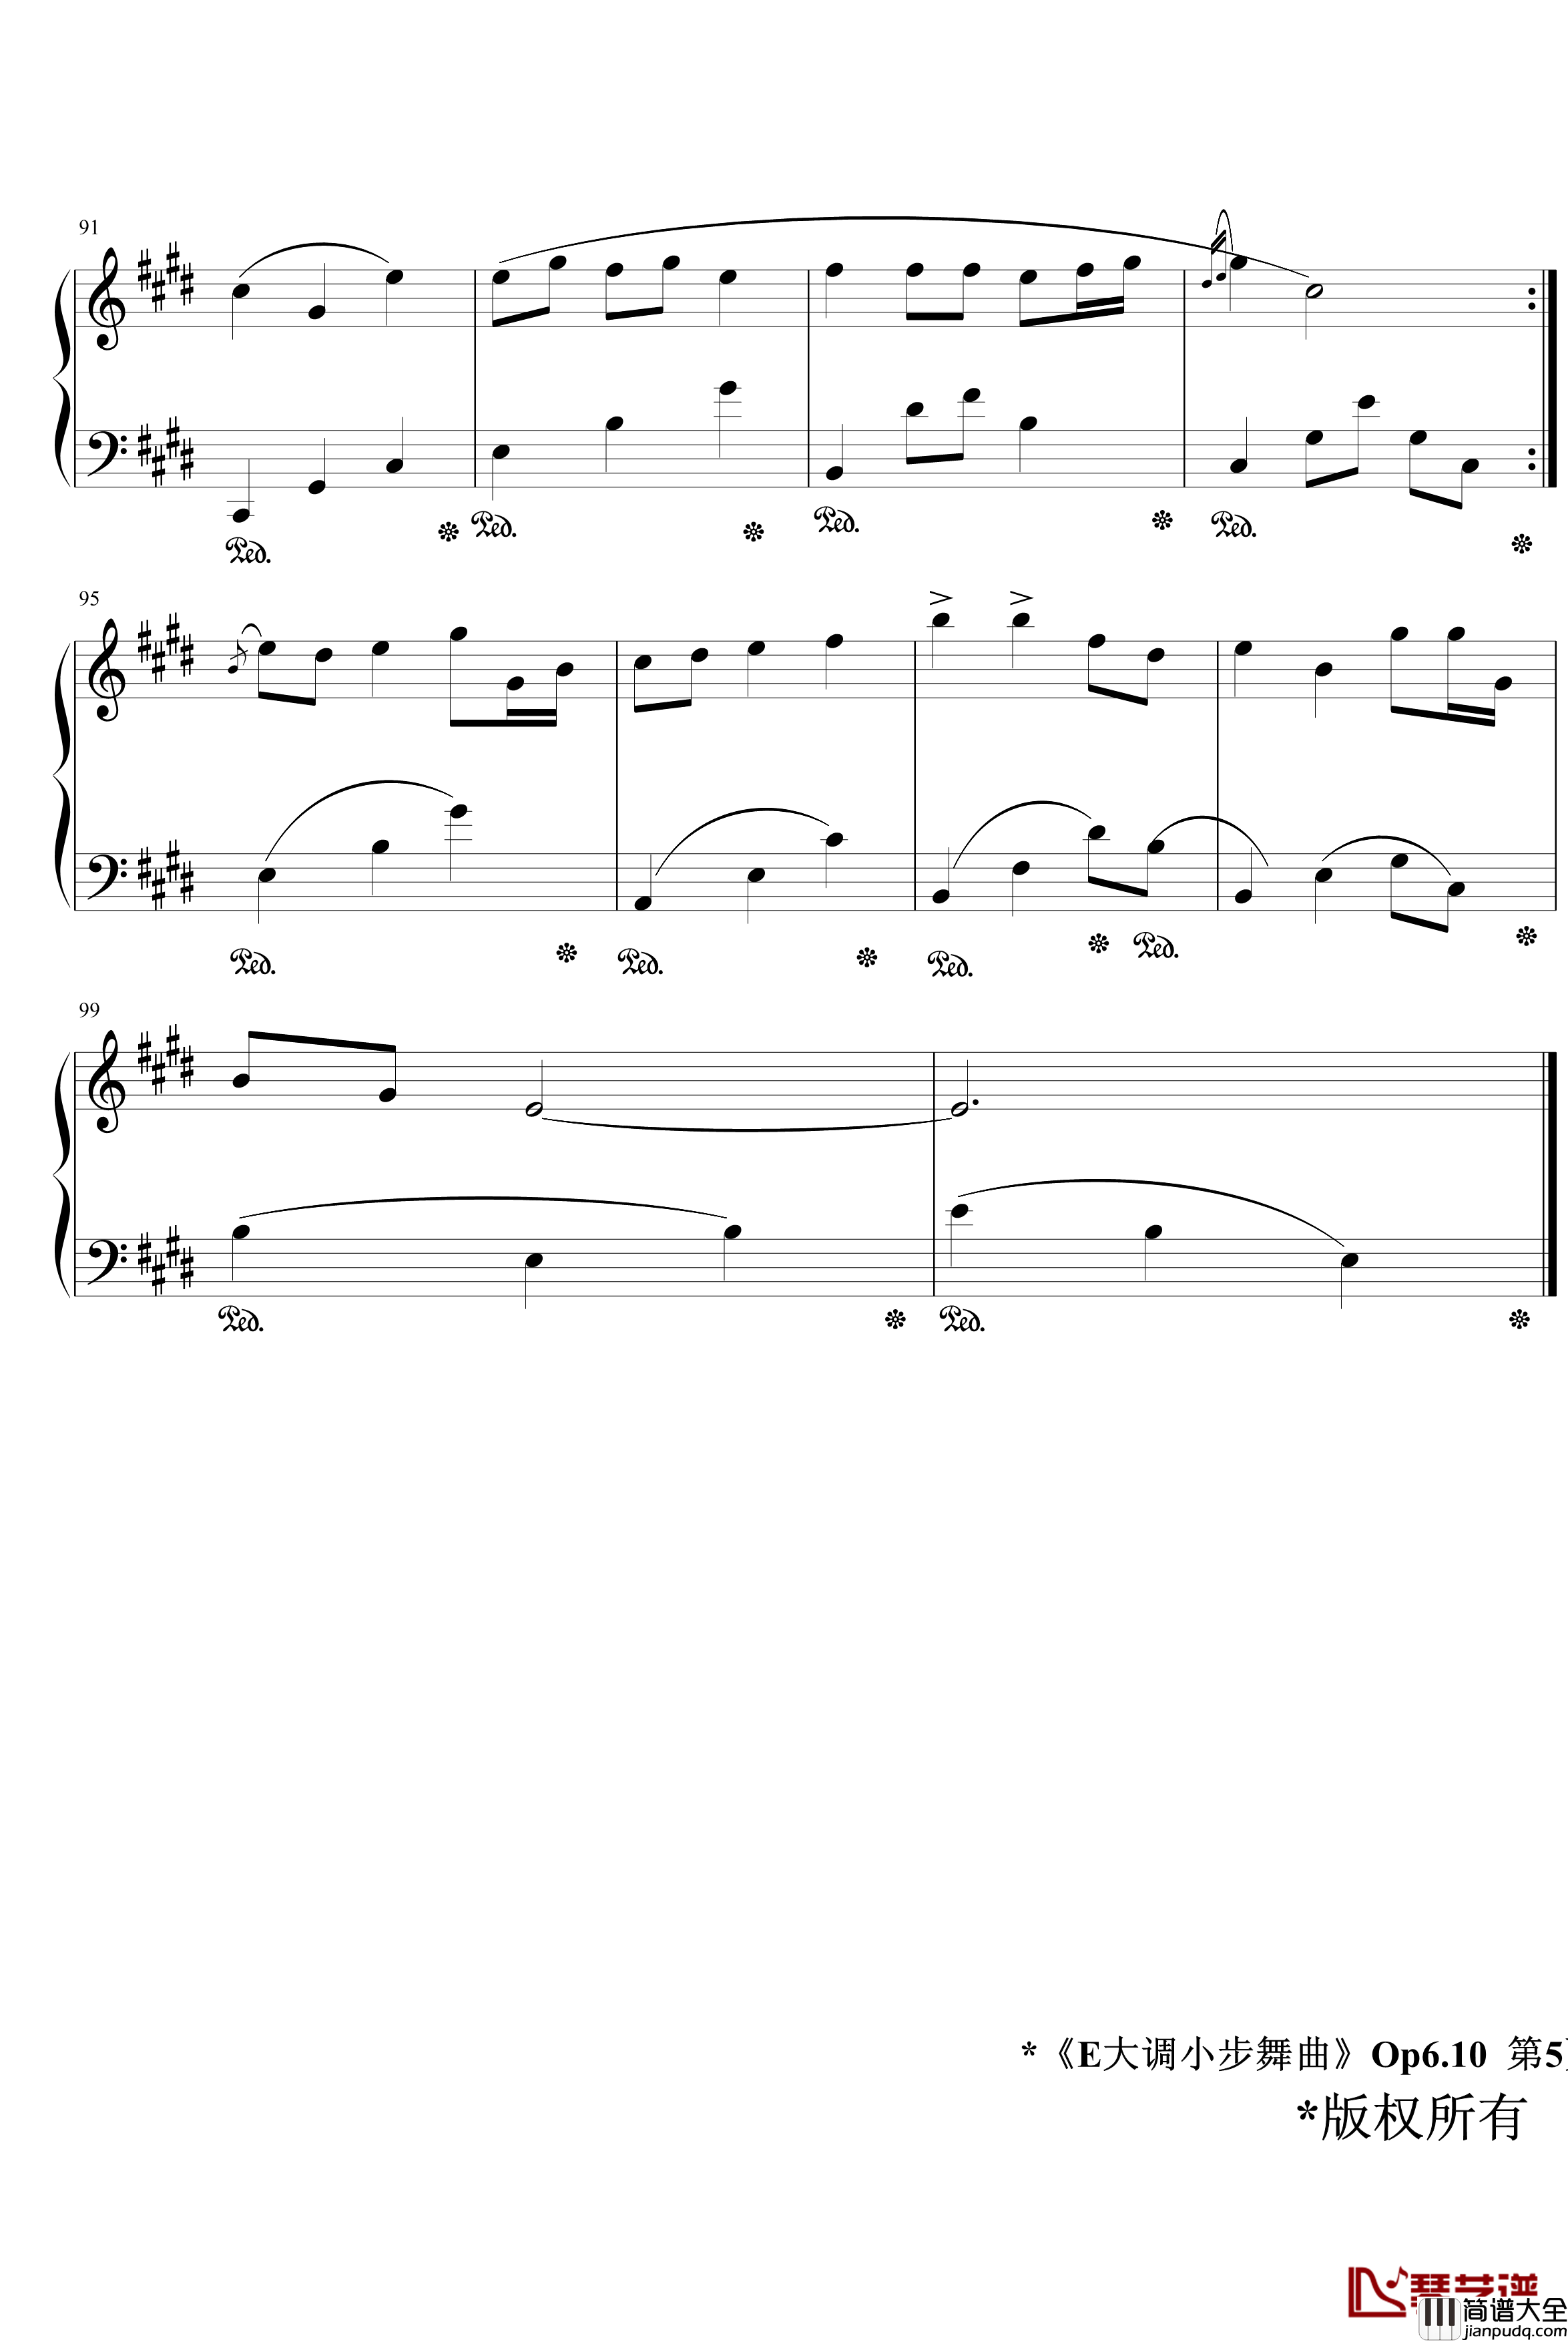 E大调小步舞曲Op6.10钢琴谱_jerry5743